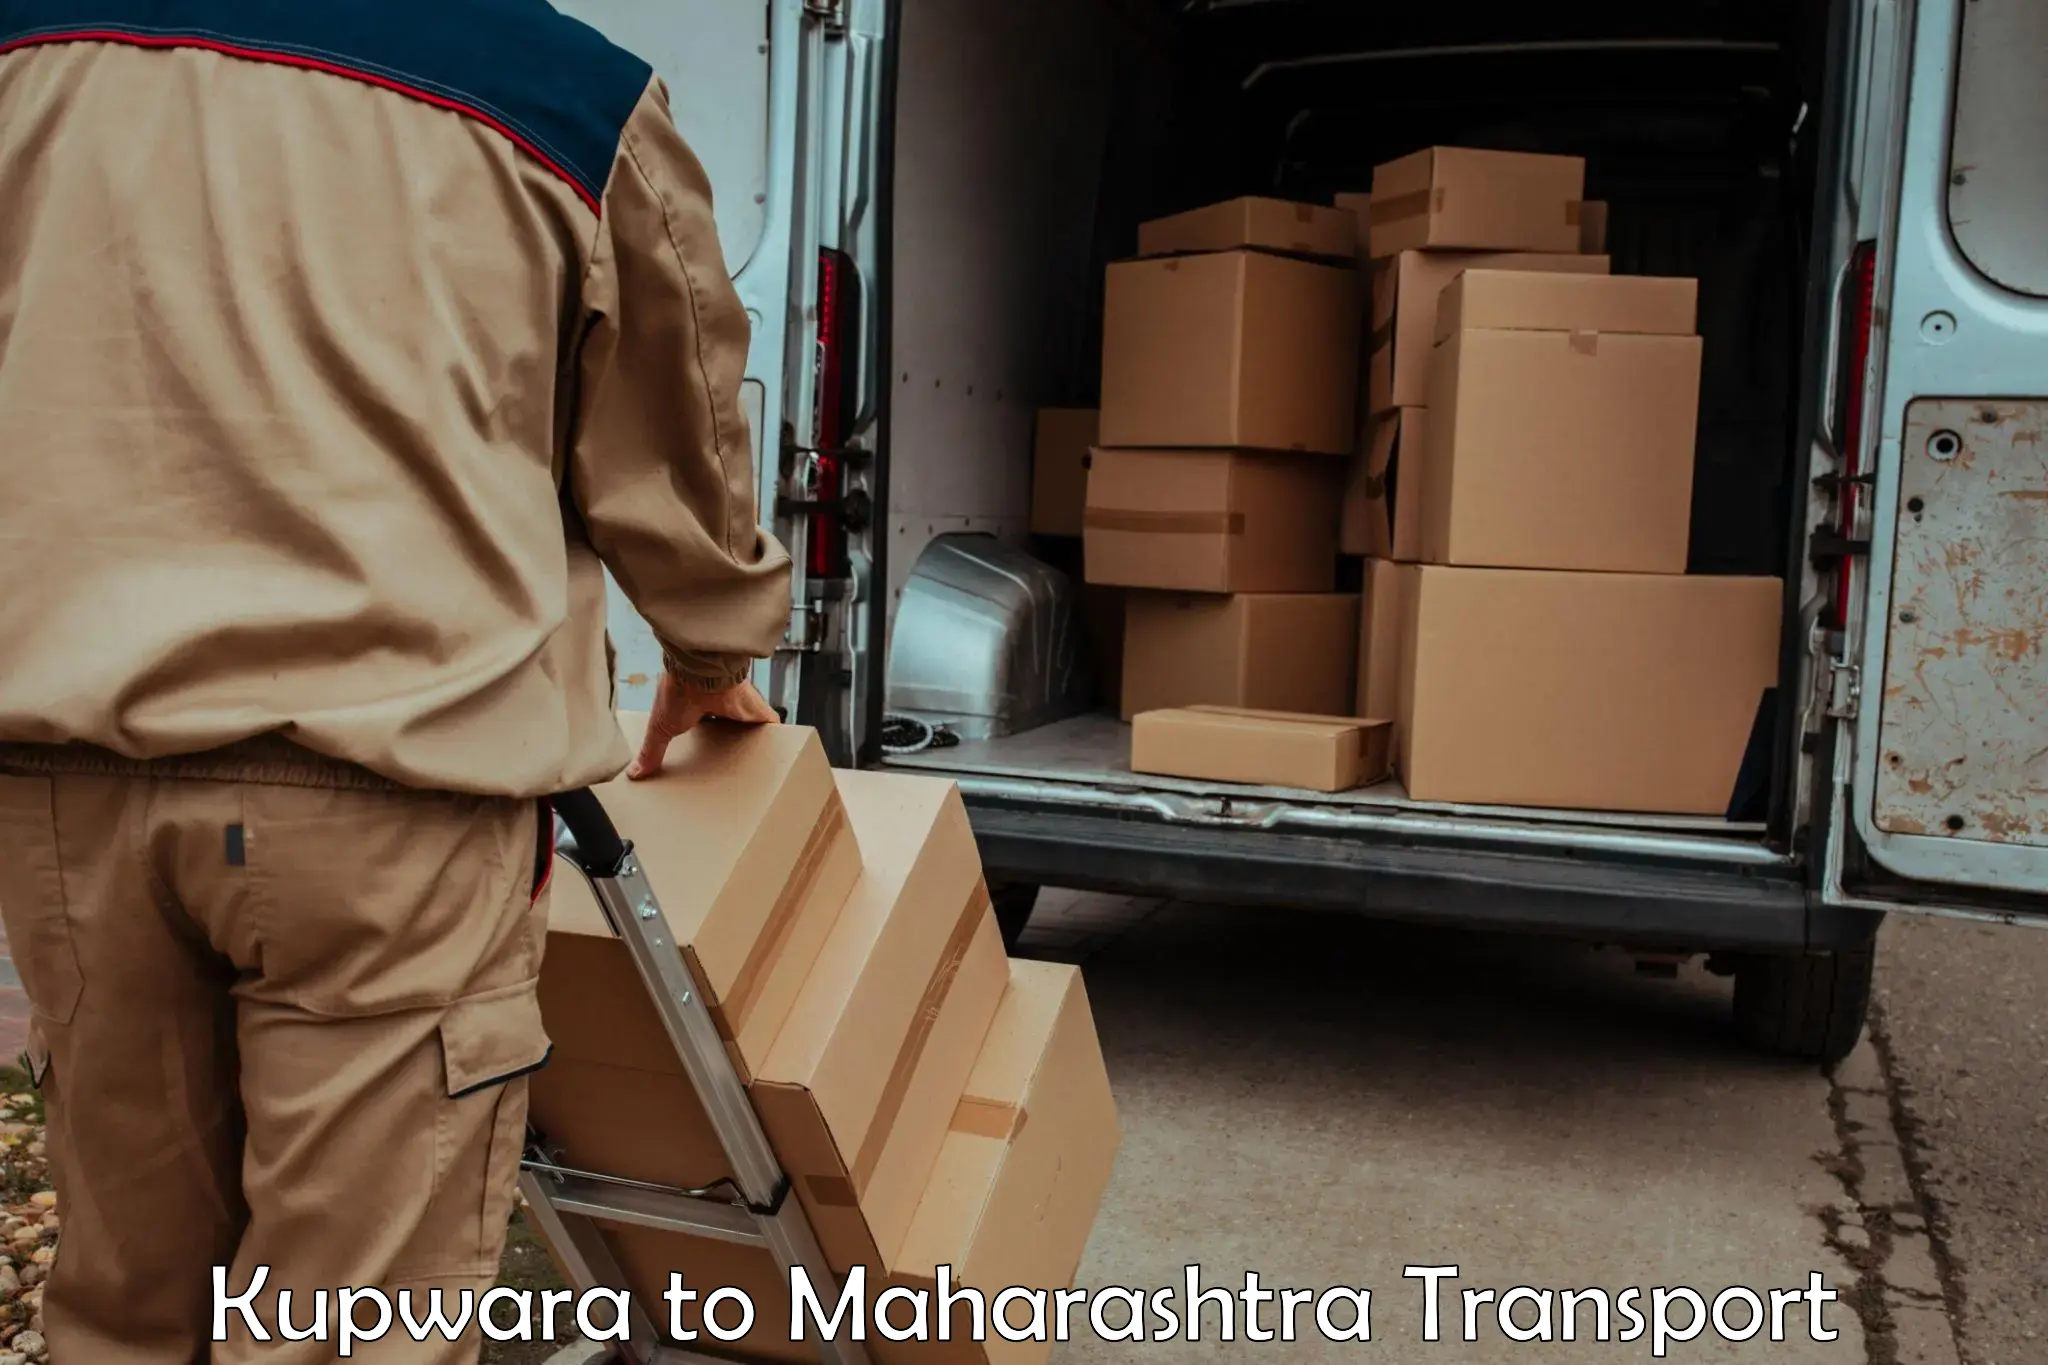 Cargo transport services Kupwara to Tata Institute of Social Sciences Mumbai